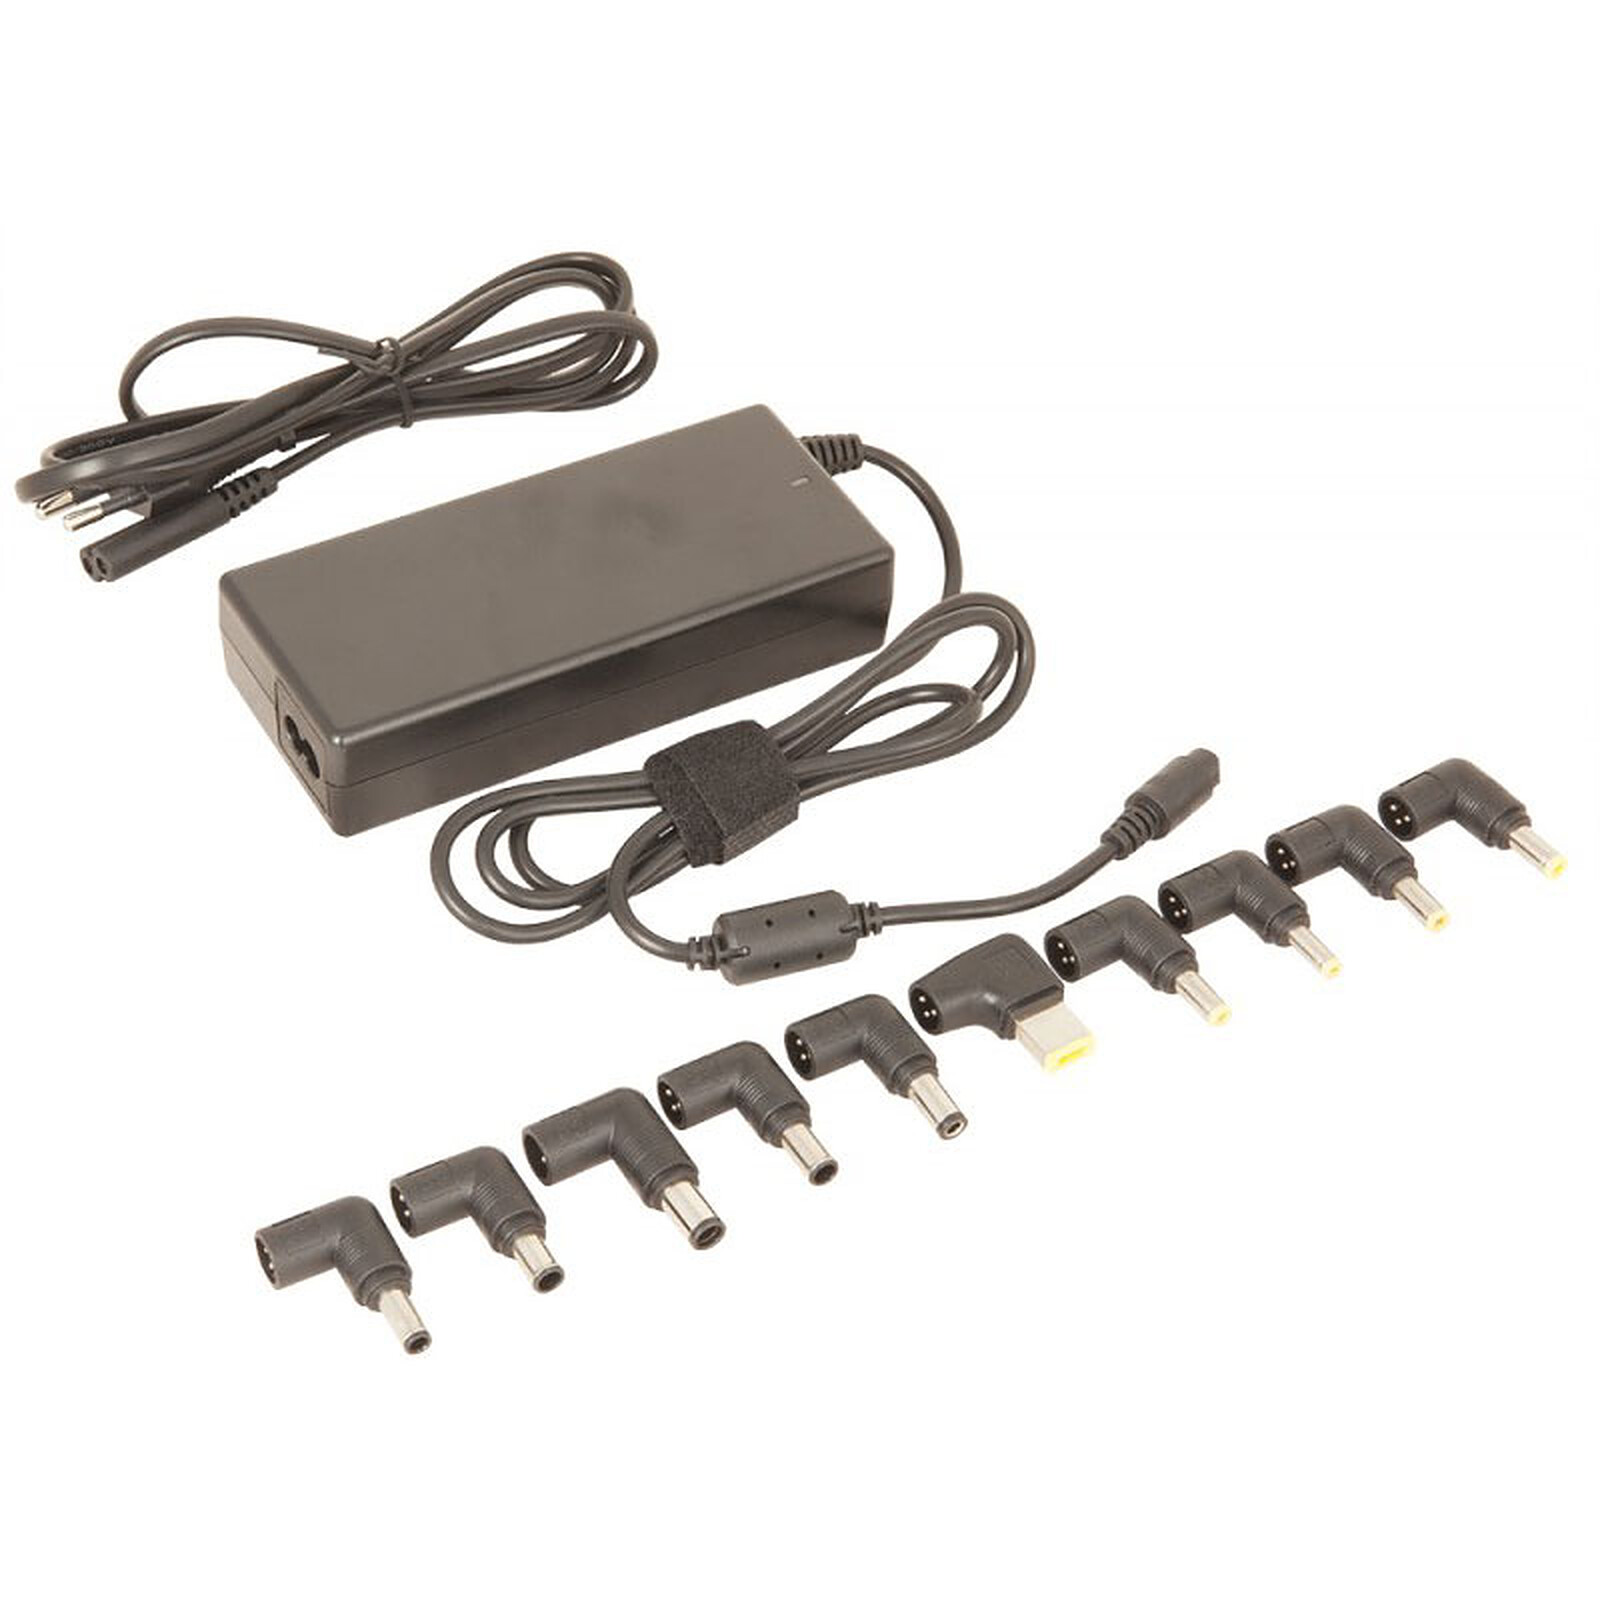 LDLC Adaptateur secteur 45W - Chargeur PC portable - Garantie 3